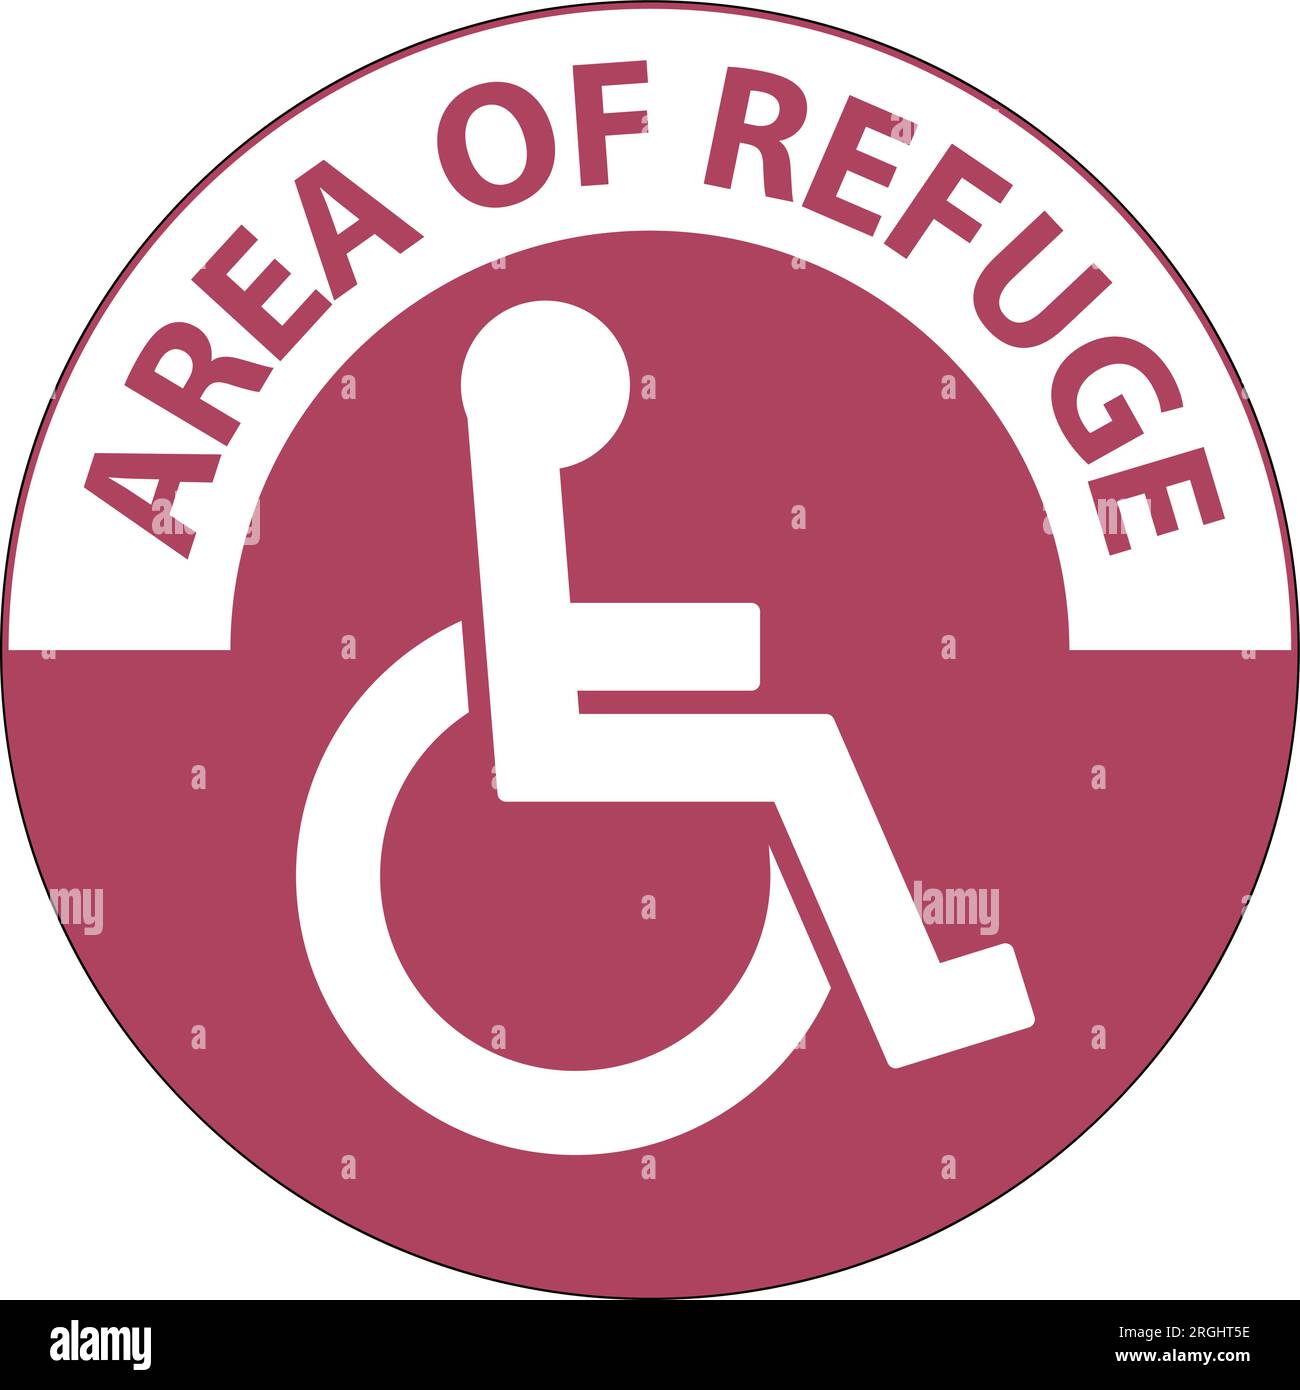 Panneau de plancher zone du refuge, avec symbole handicap Illustration de Vecteur